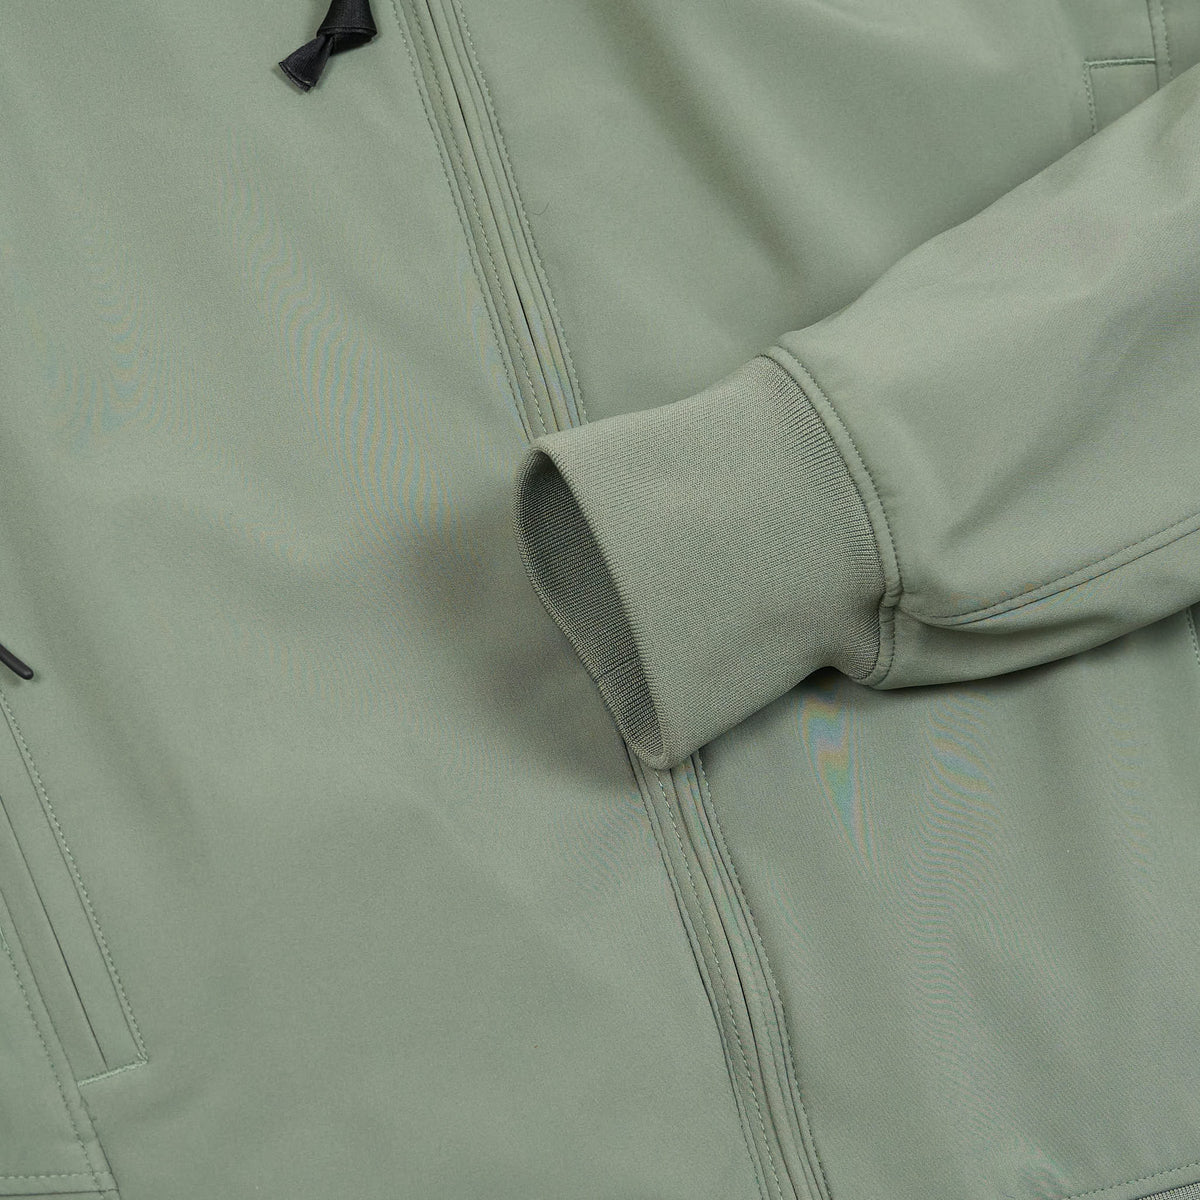 C.P. Company Soft-Shell Hooded Jacket